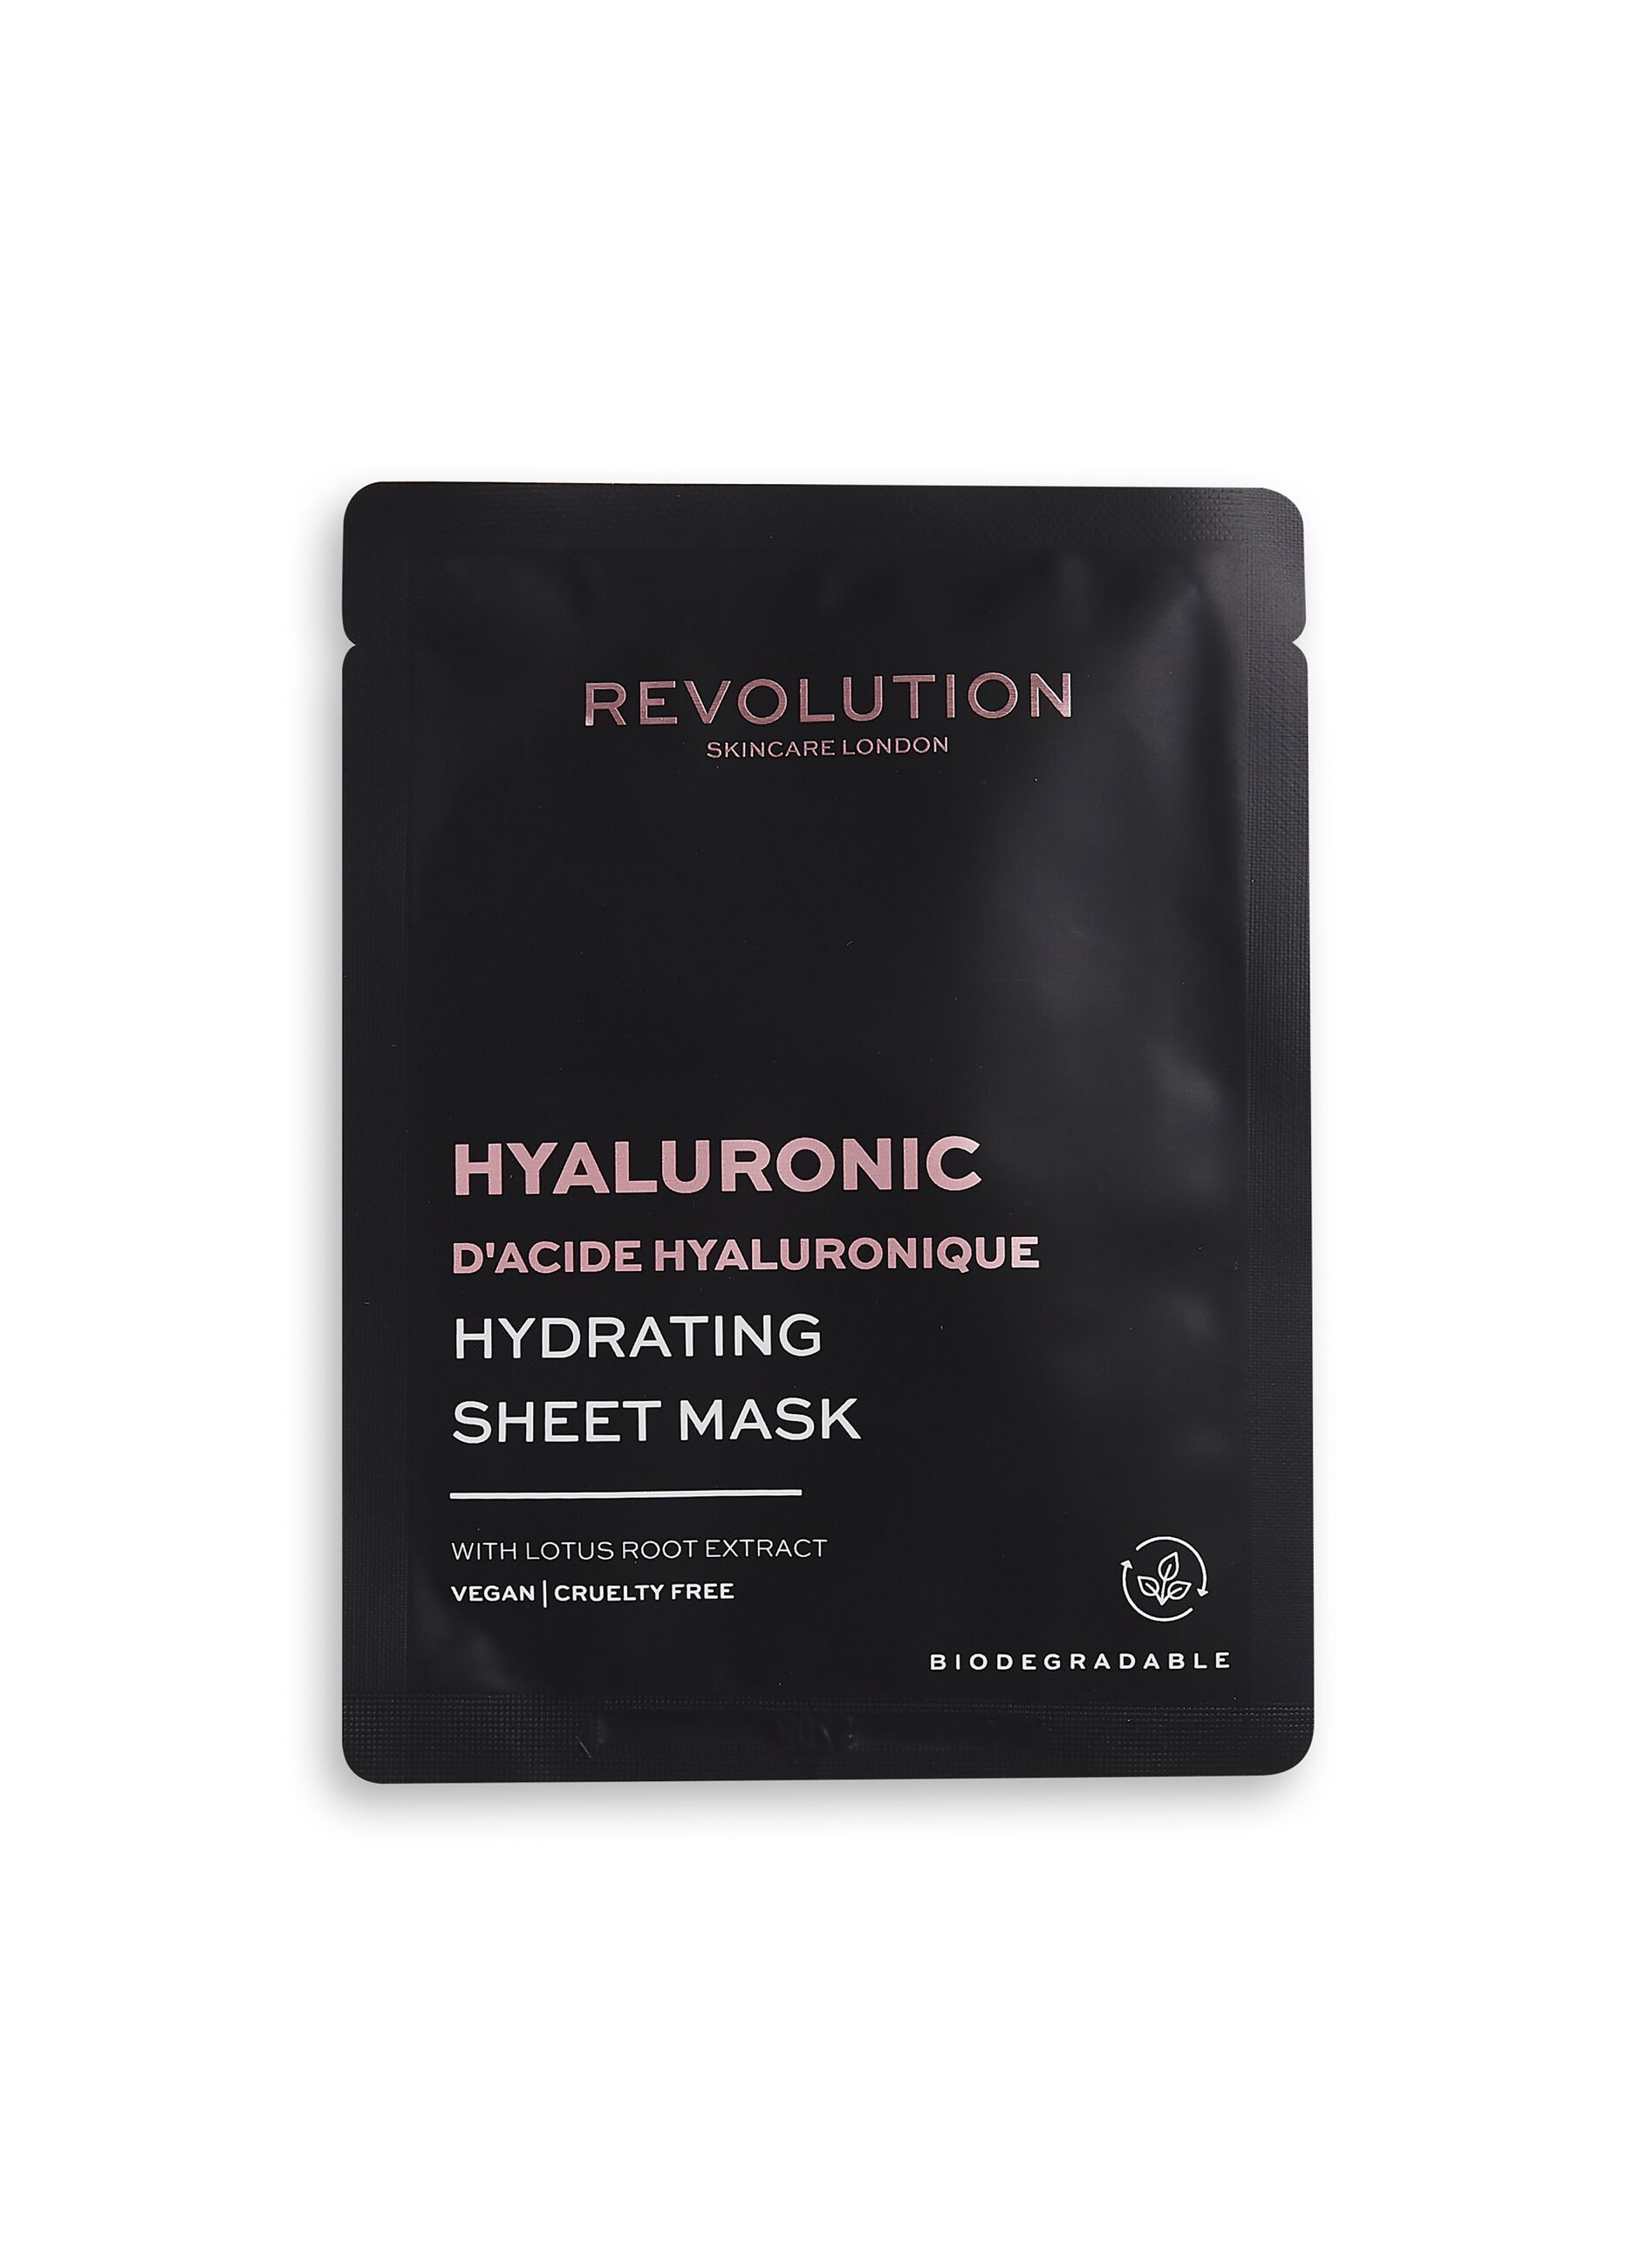 Hyaluronic acid moisturising mask